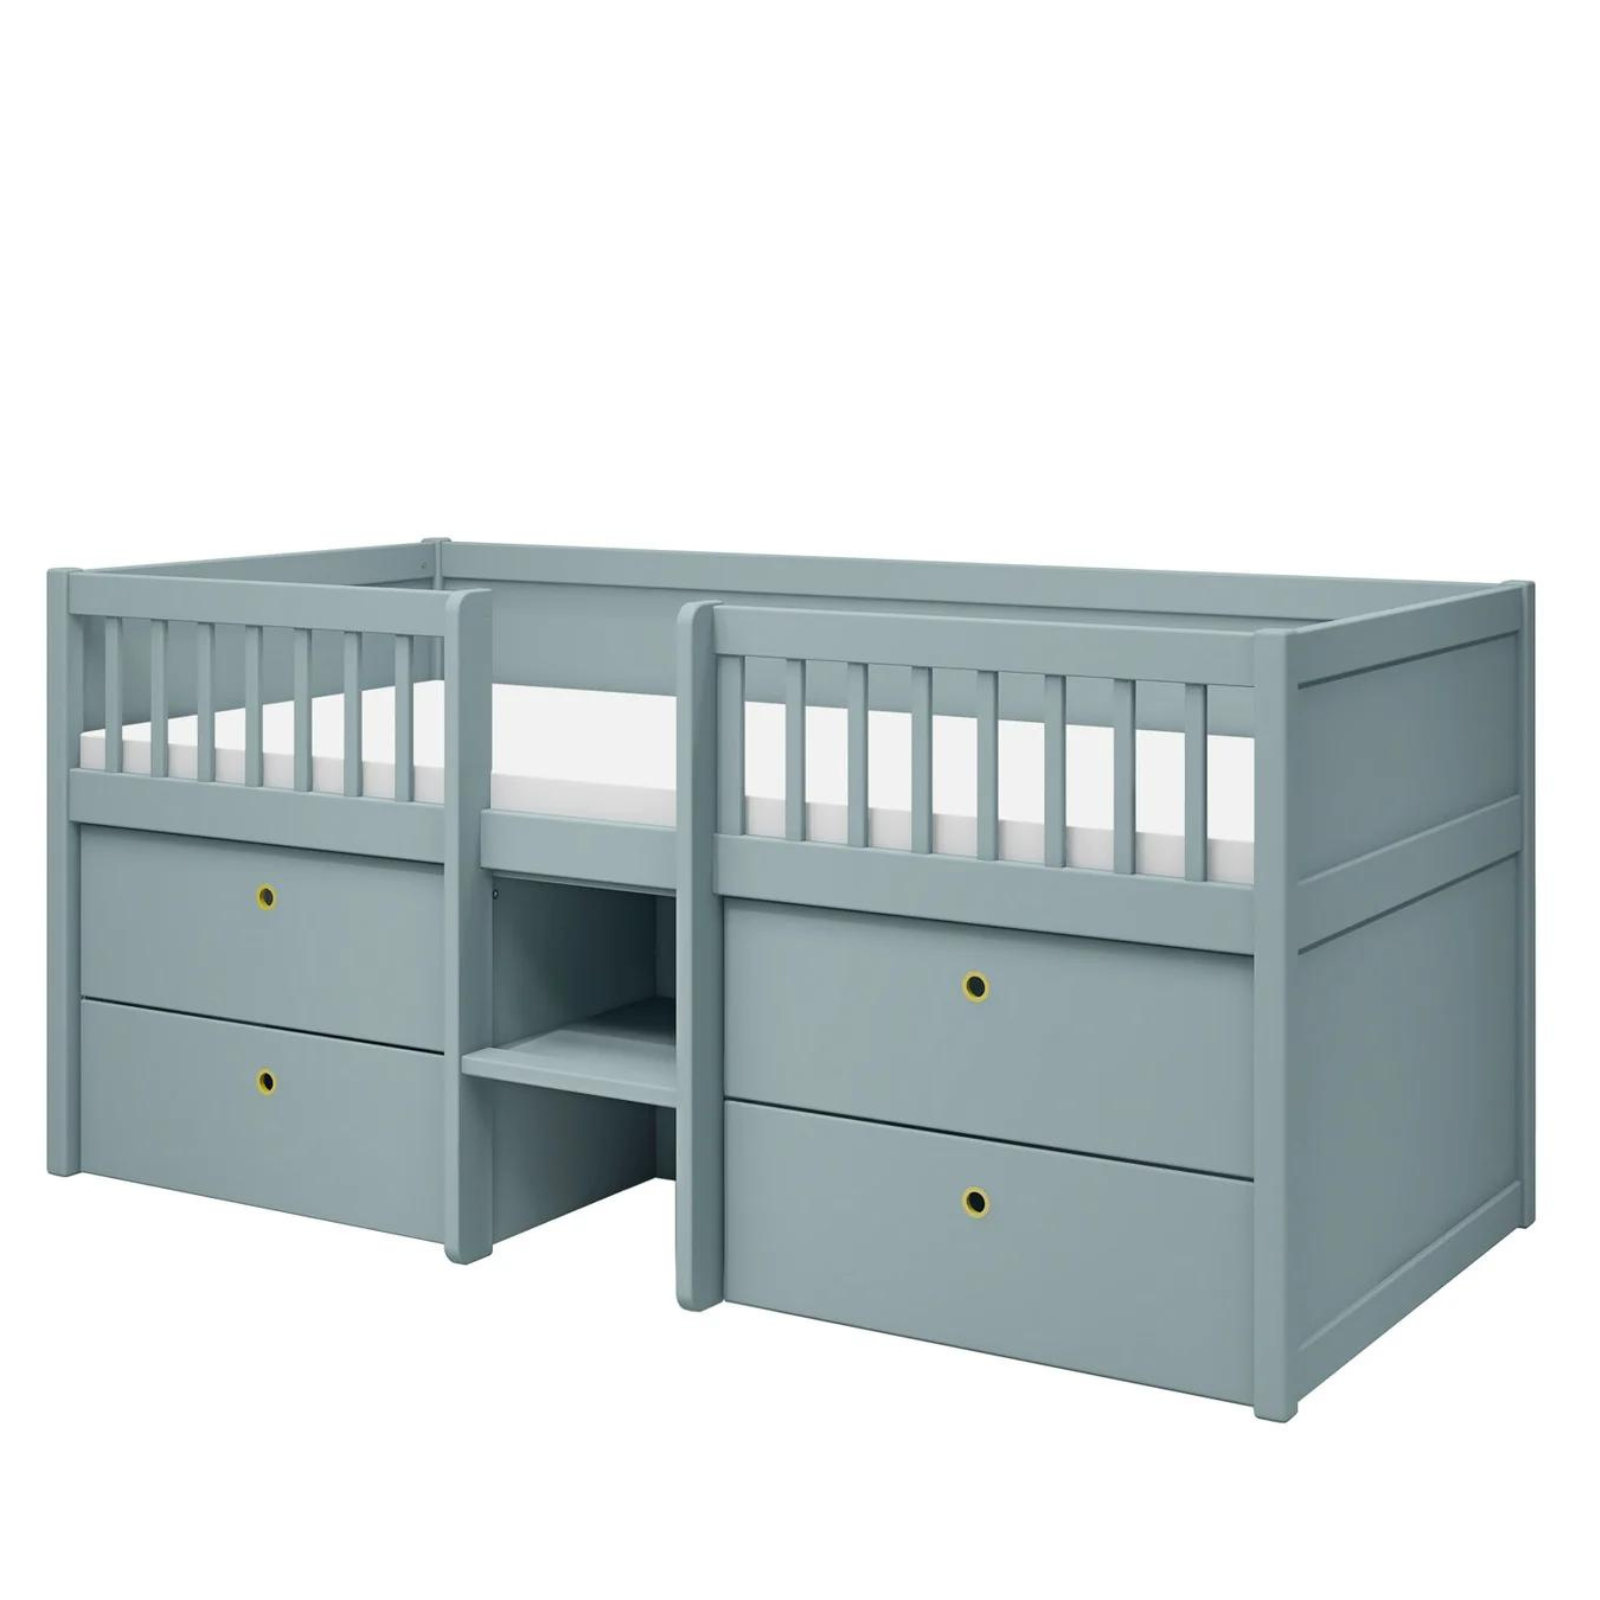 FLEXA Freja Single bed for Kids  in blue-ish color